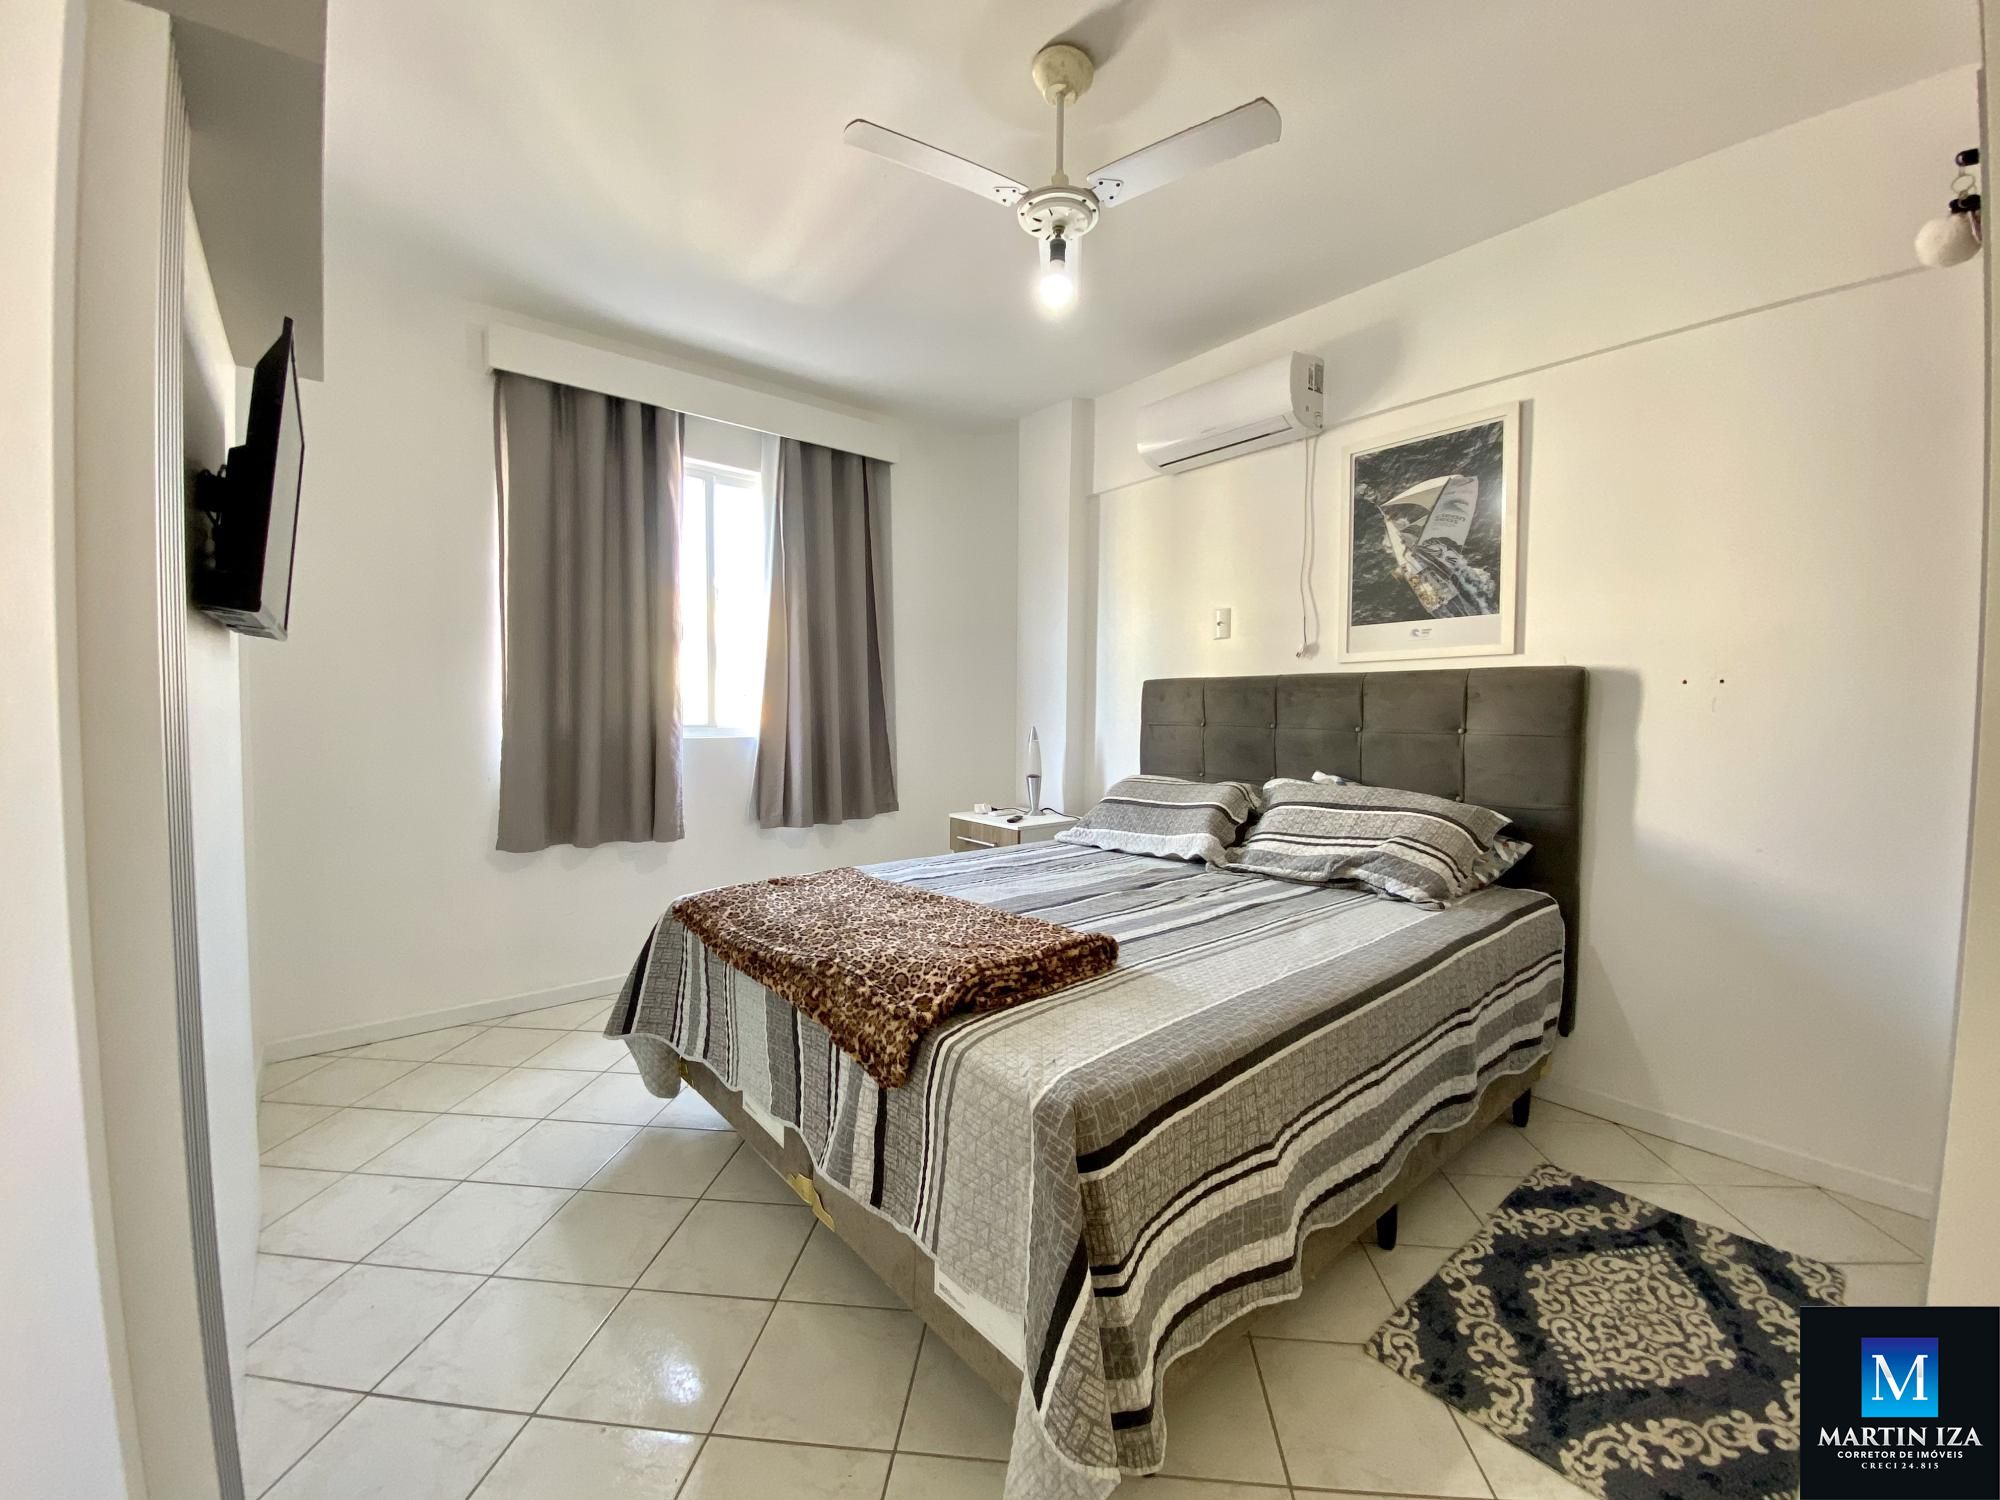 Apartamento com 3 Dormitórios para alugar, 95 m² por R$ 400,00